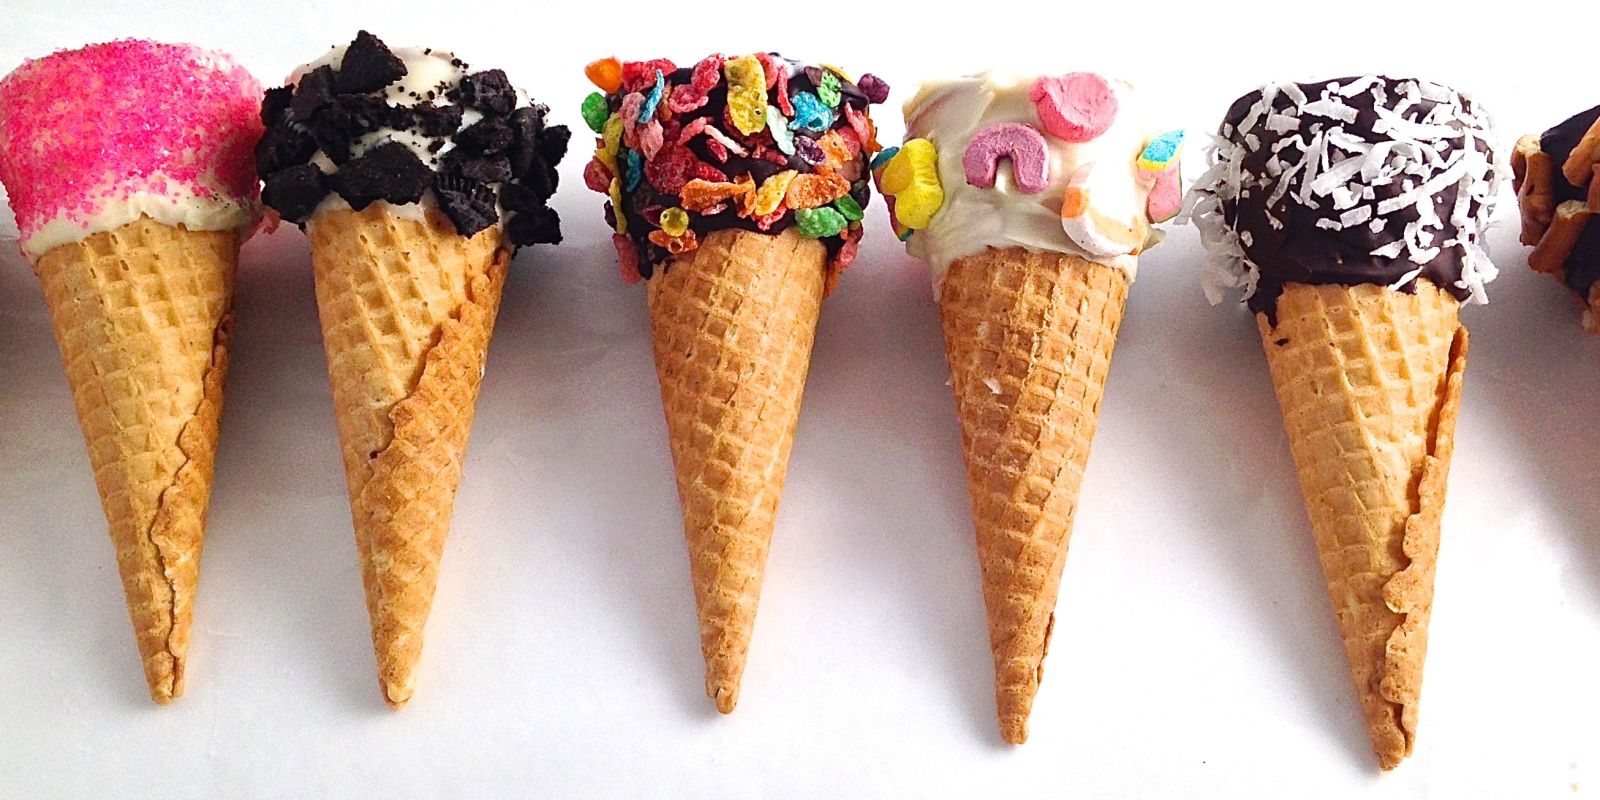 Хочешь – мороженное, хочешь – пирожное: осуществить мечту сладкоежек поможет бизнес-план создания кафе-мороженное